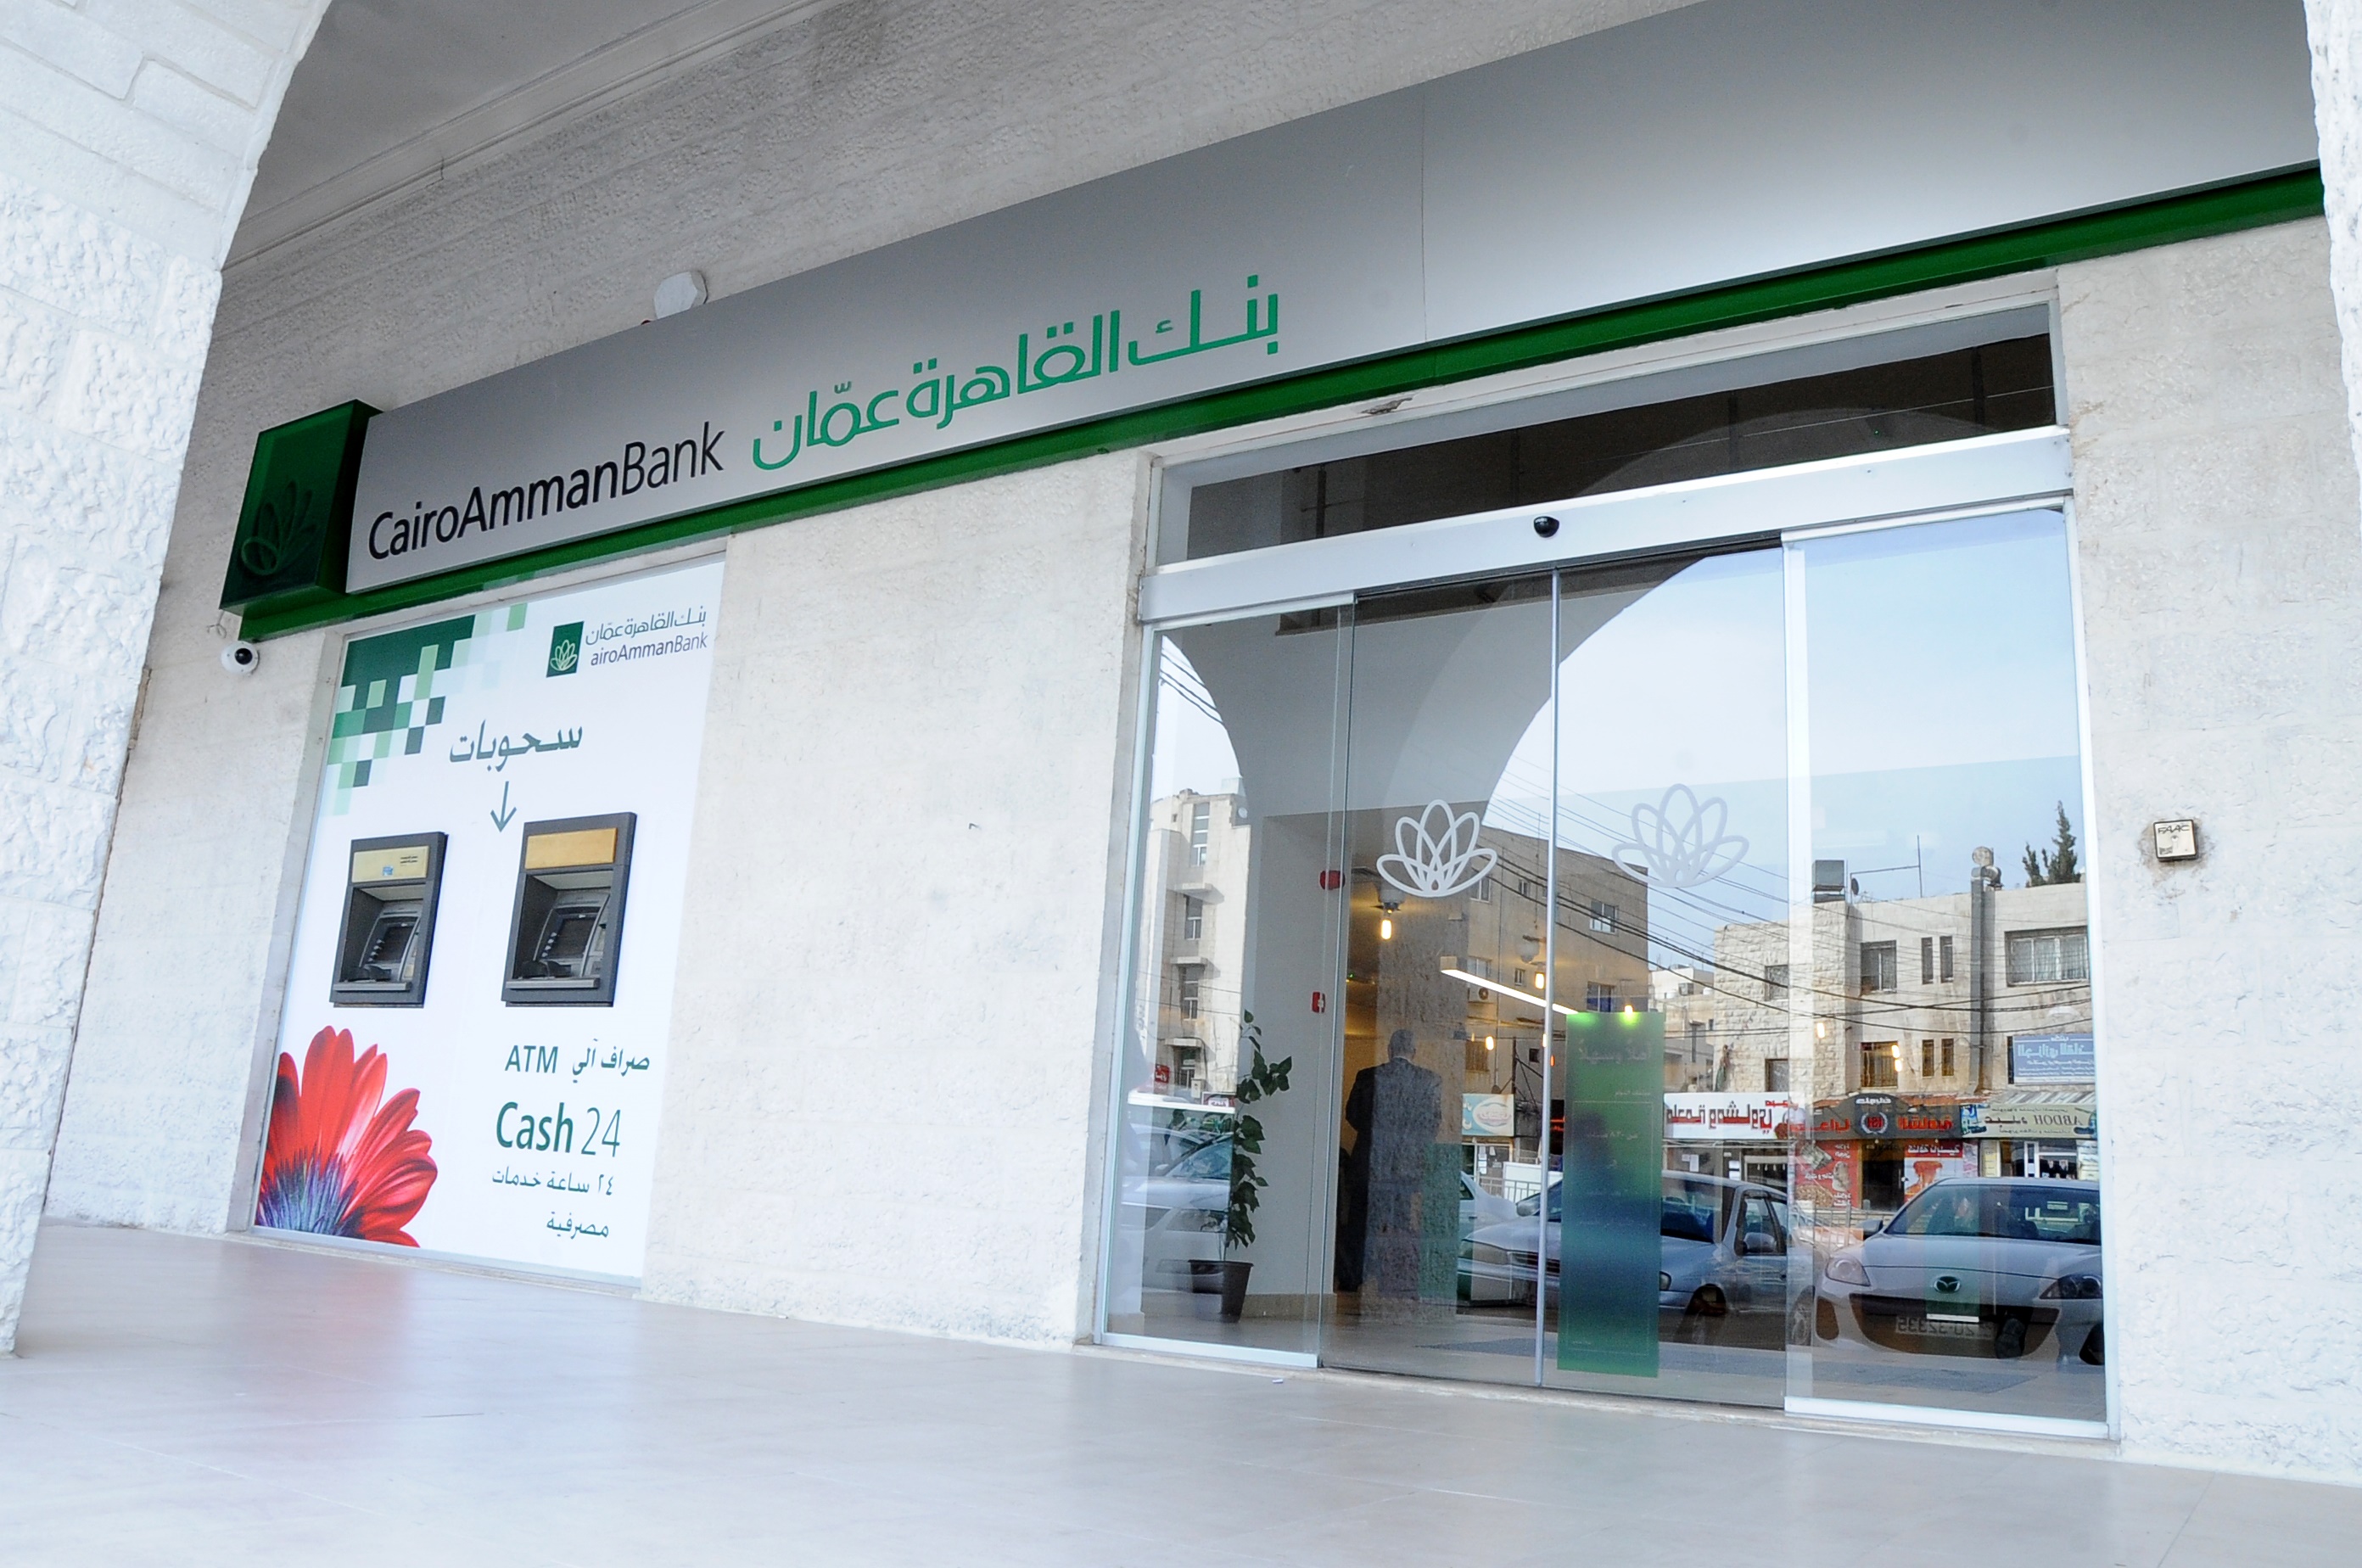 وكالة الناس - استقبل بنك القاهرة عمان فرع صويلح عملائه بالفرع الجديد اعتبارا من يوم الأحد الموافق الثالث من شهر نيسان الجاري.